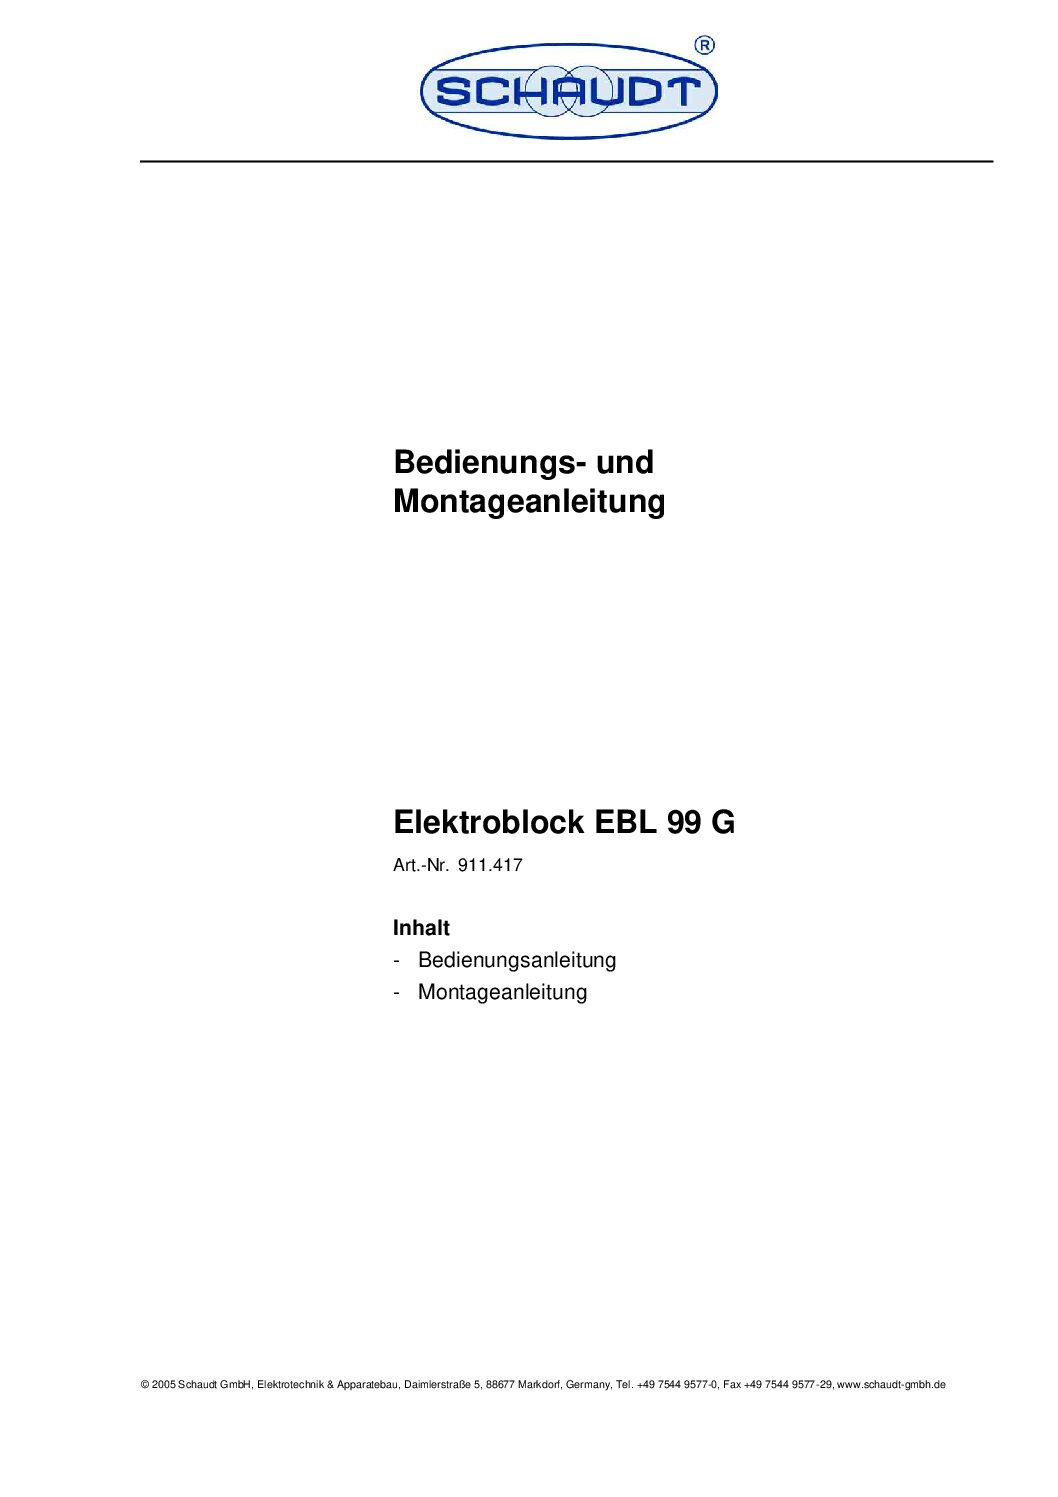 Schaudt Elektroblock EBL 99 G Bedienungsanleitung